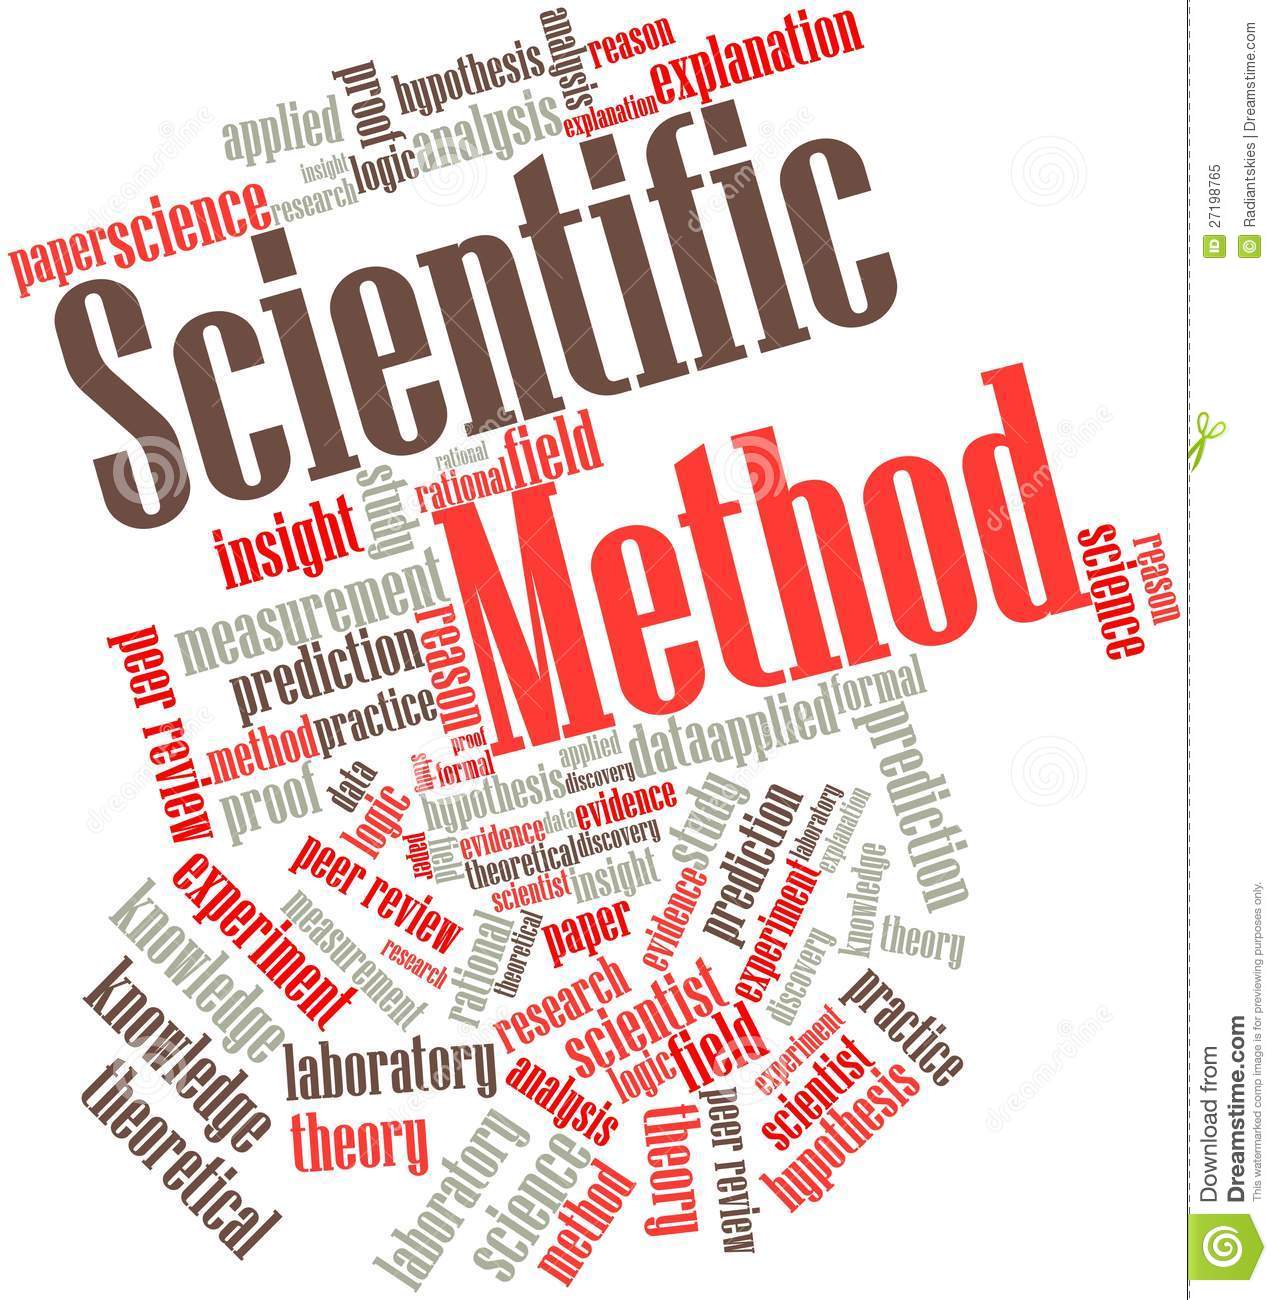 Scientific Method Clipart For Scientific Method